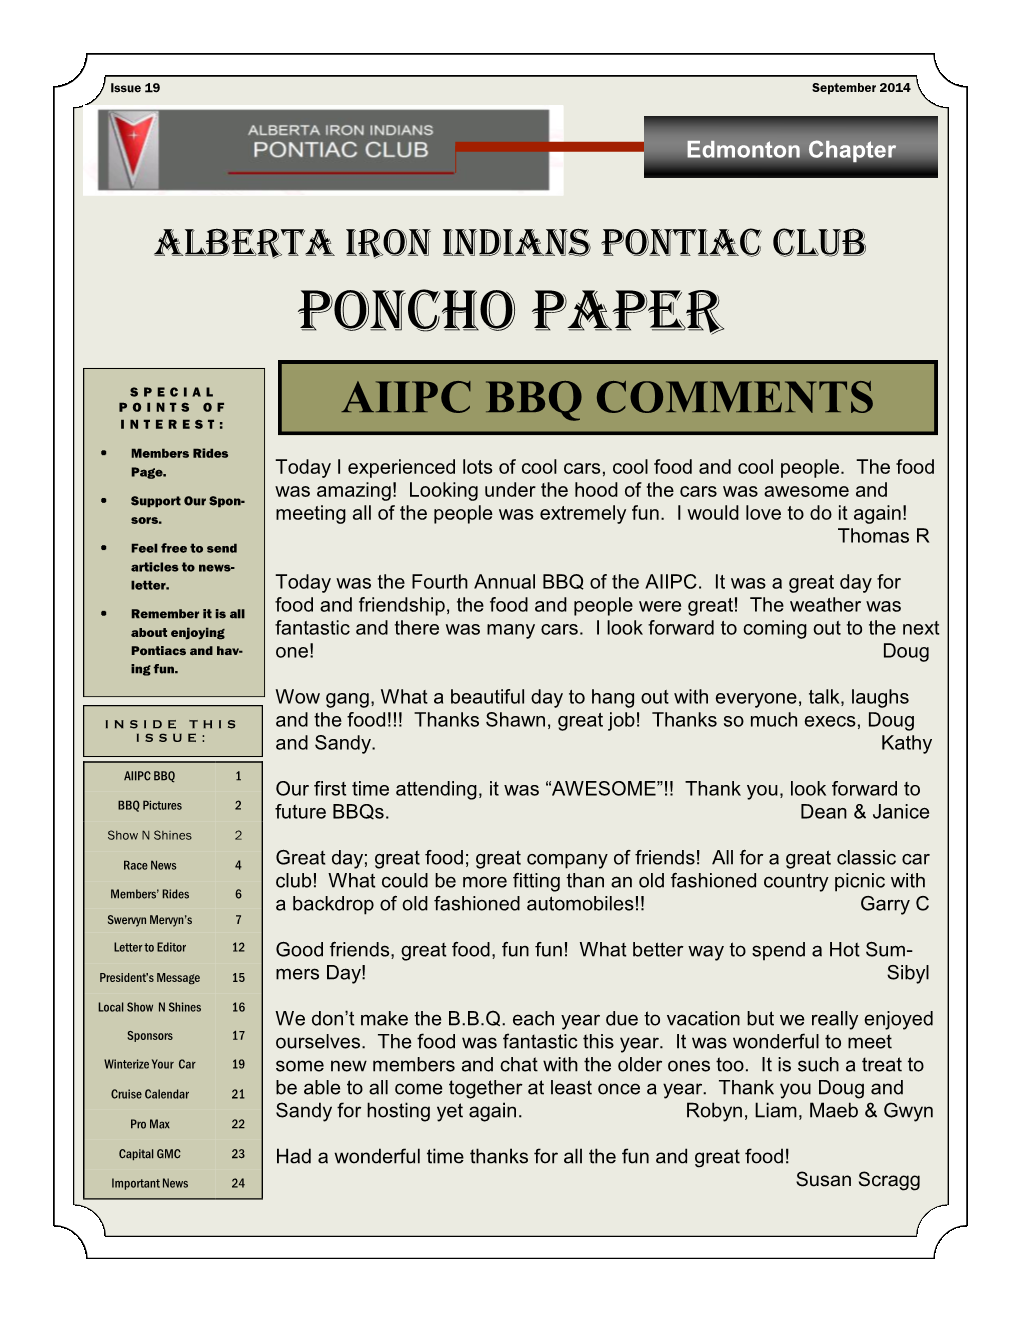 Poncho Paper